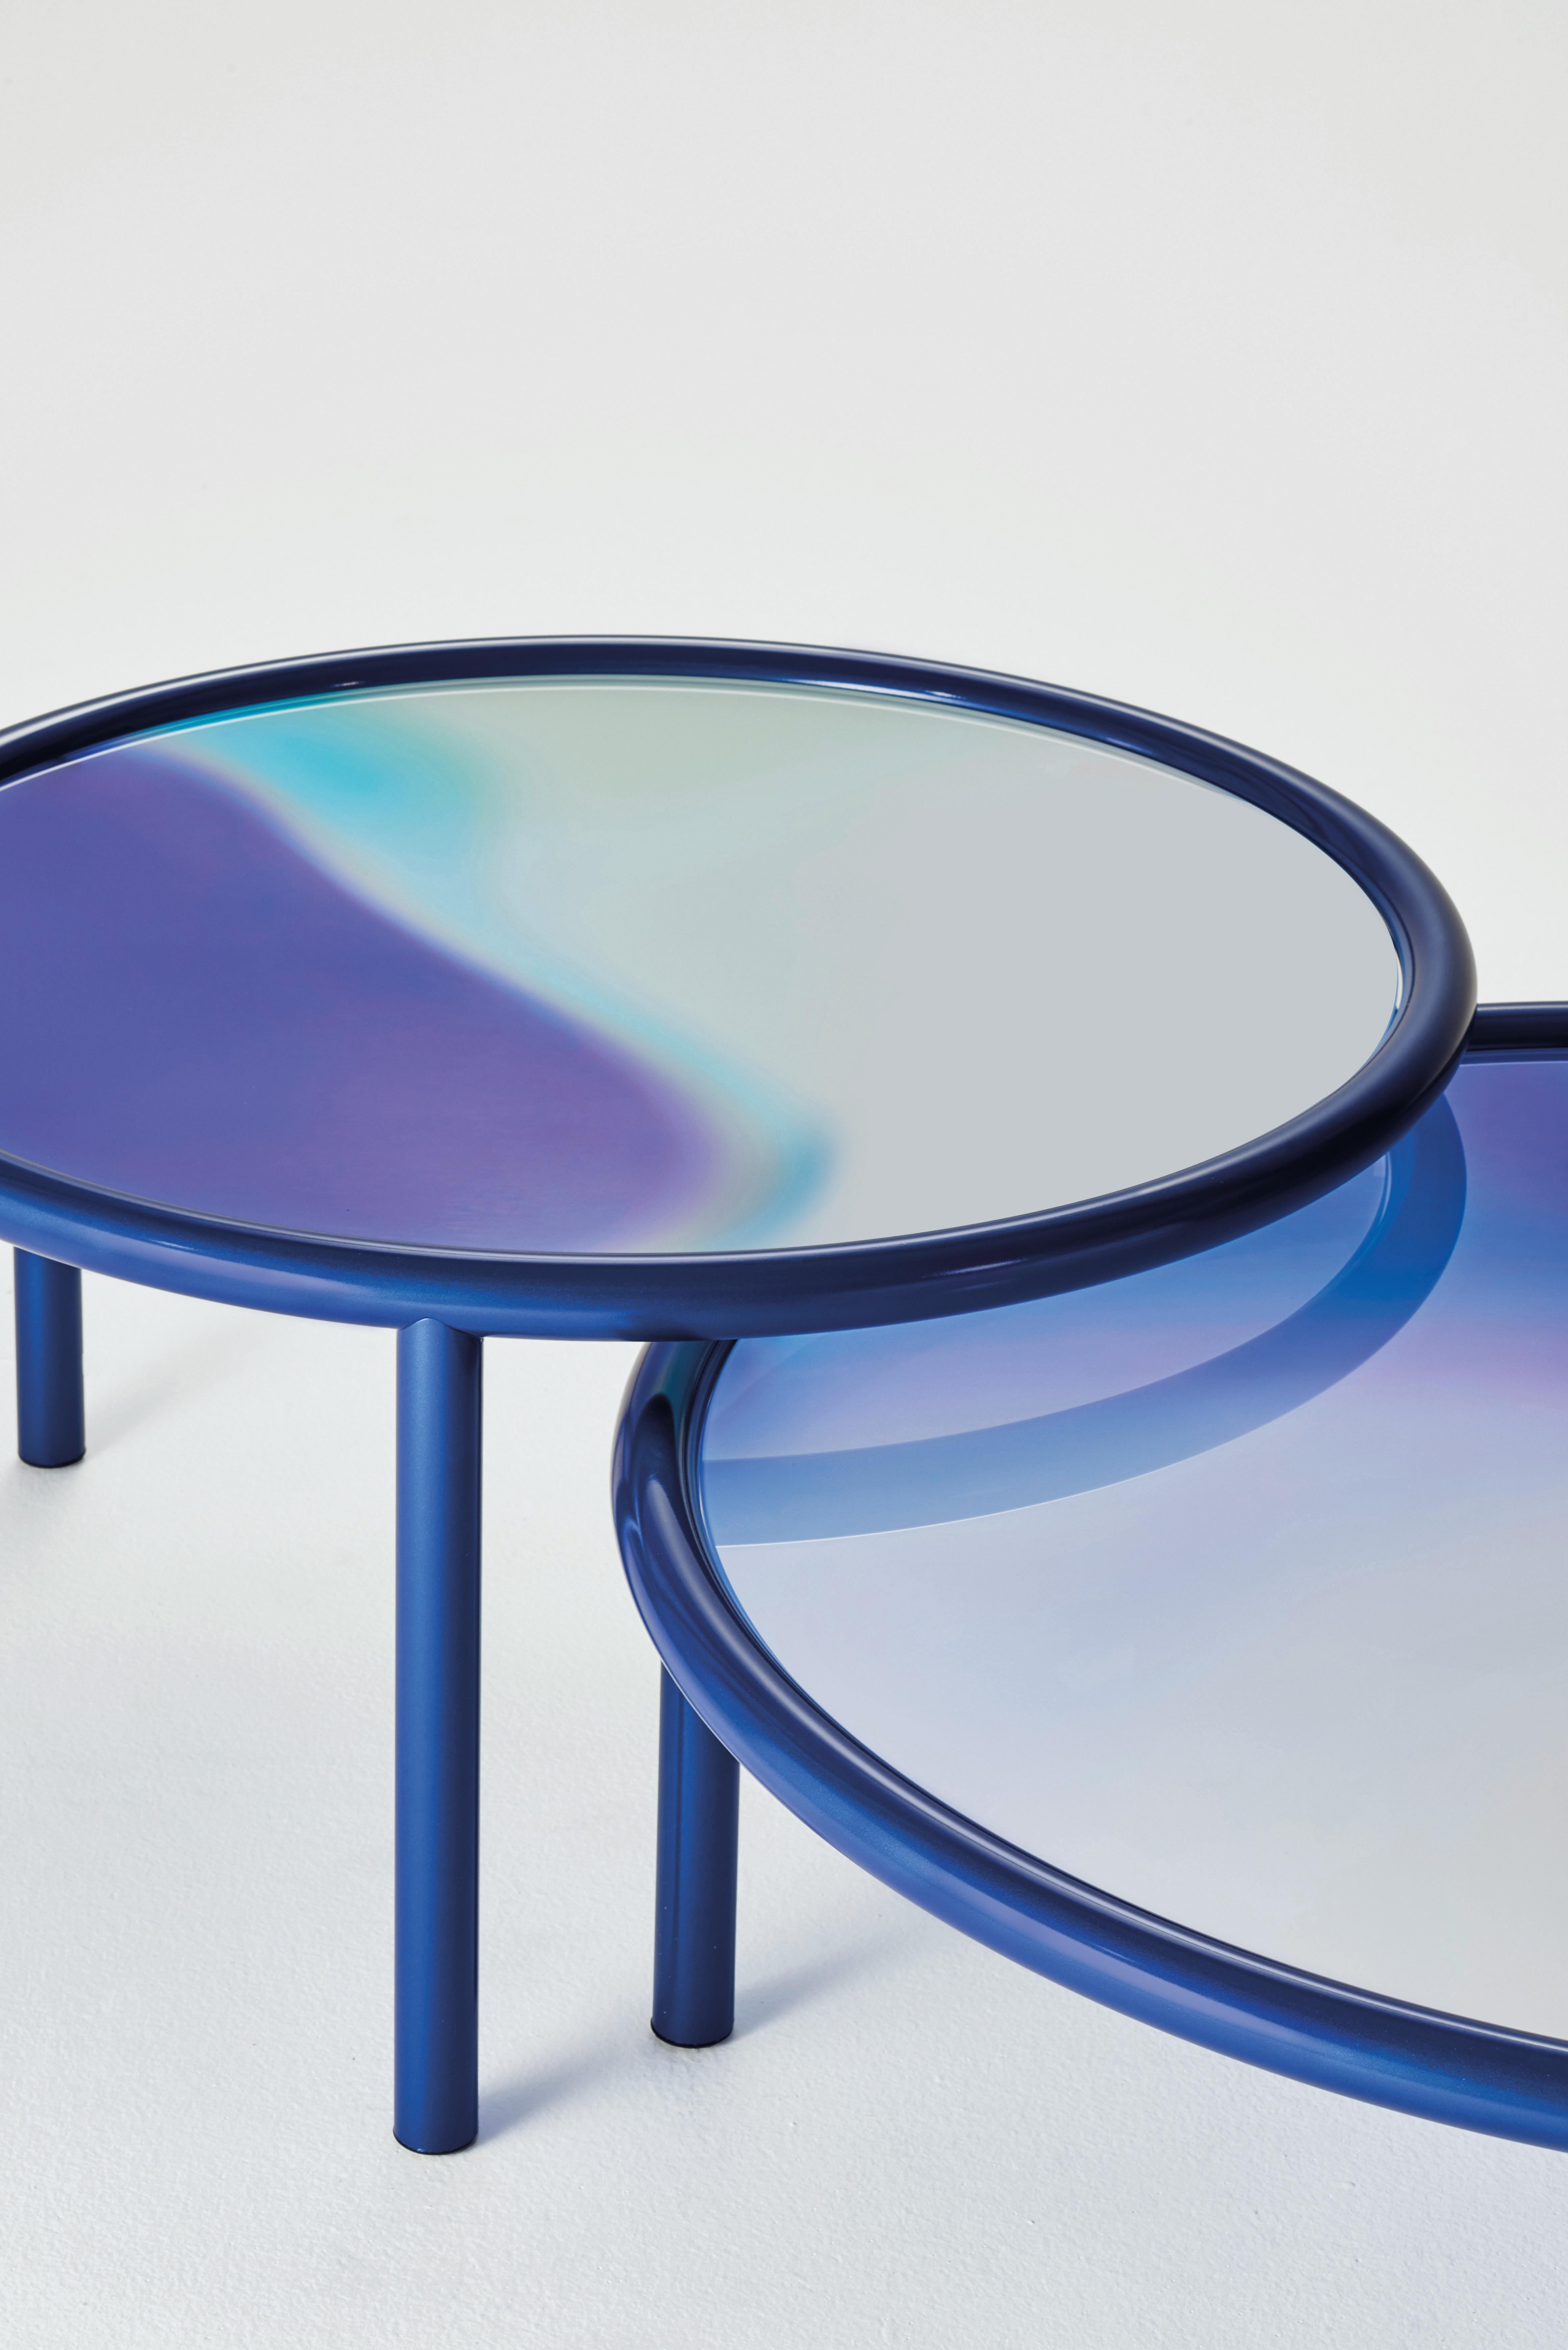 Tables basses rondes avec structure métallique tubulaire peinte en bleu nuit ou en cuivre dans une finition métallique spéciale opaque. Le plateau, en verre feuilleté, est une palette de couleurs sur fond de miroir, se mêlant et se mélangeant les